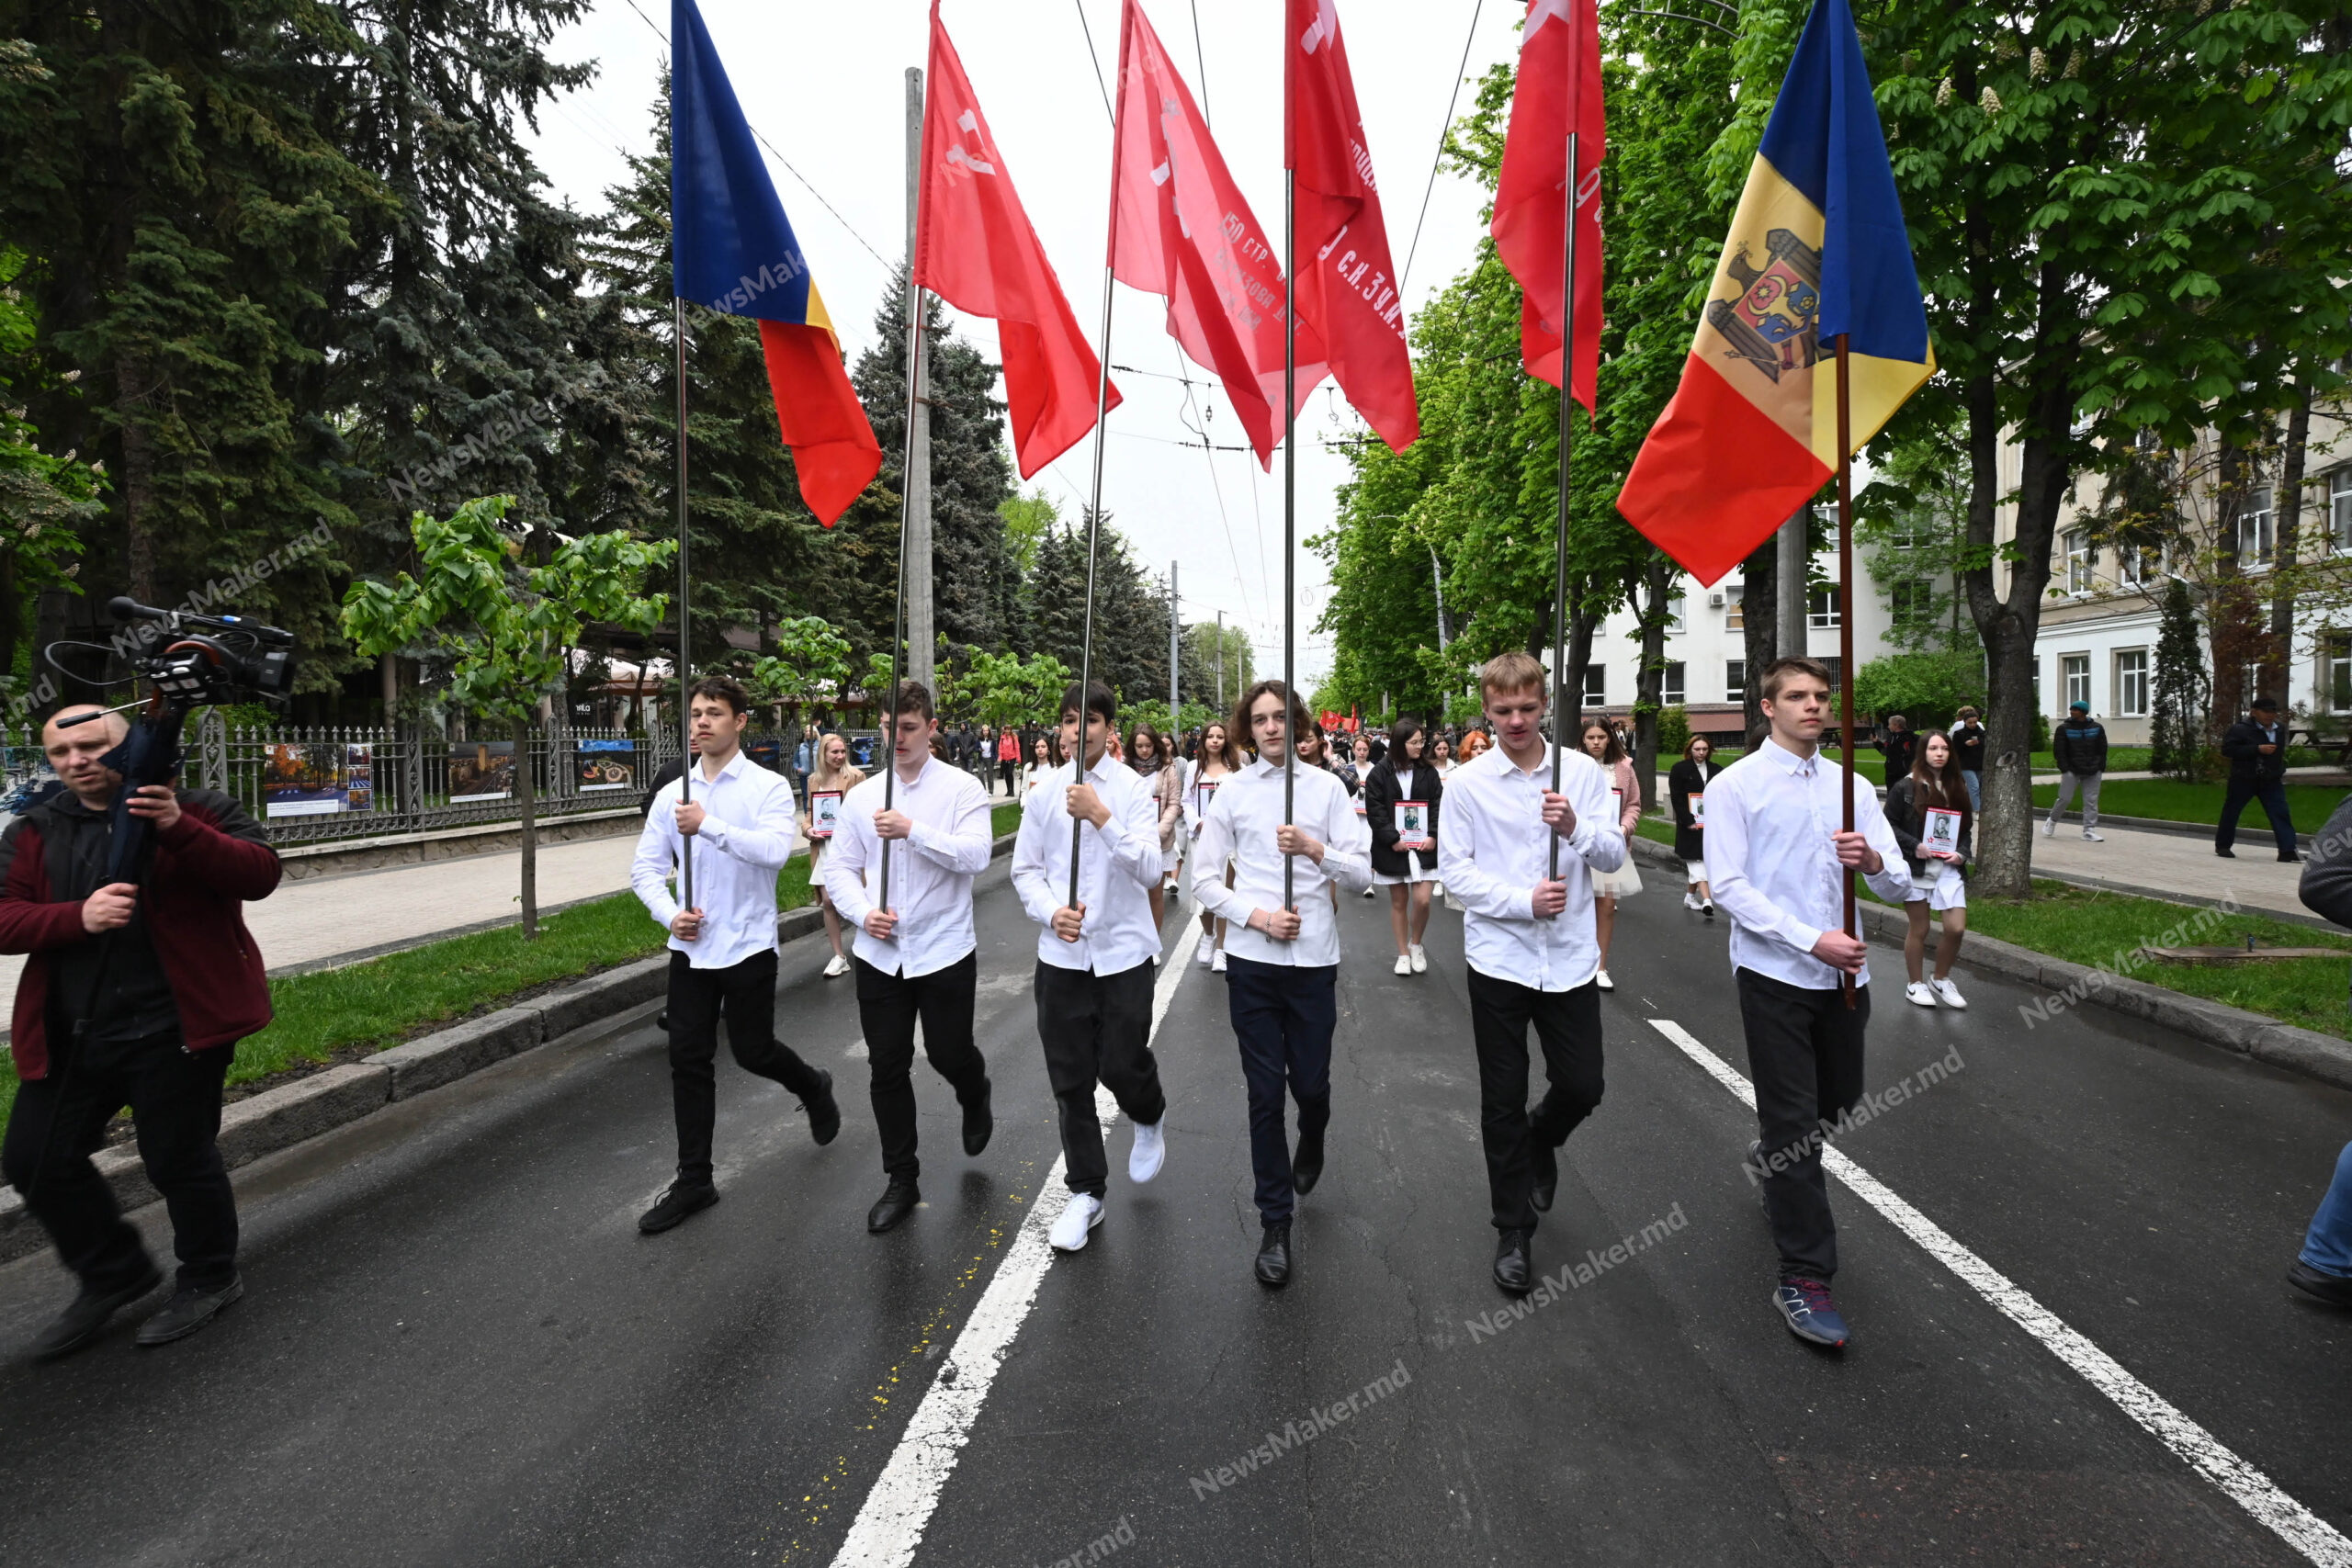 Panglici interzise, Stalin, baloane și nostalgie sovietică. 9 mai la Chișinău - FOTOREPORTAJ